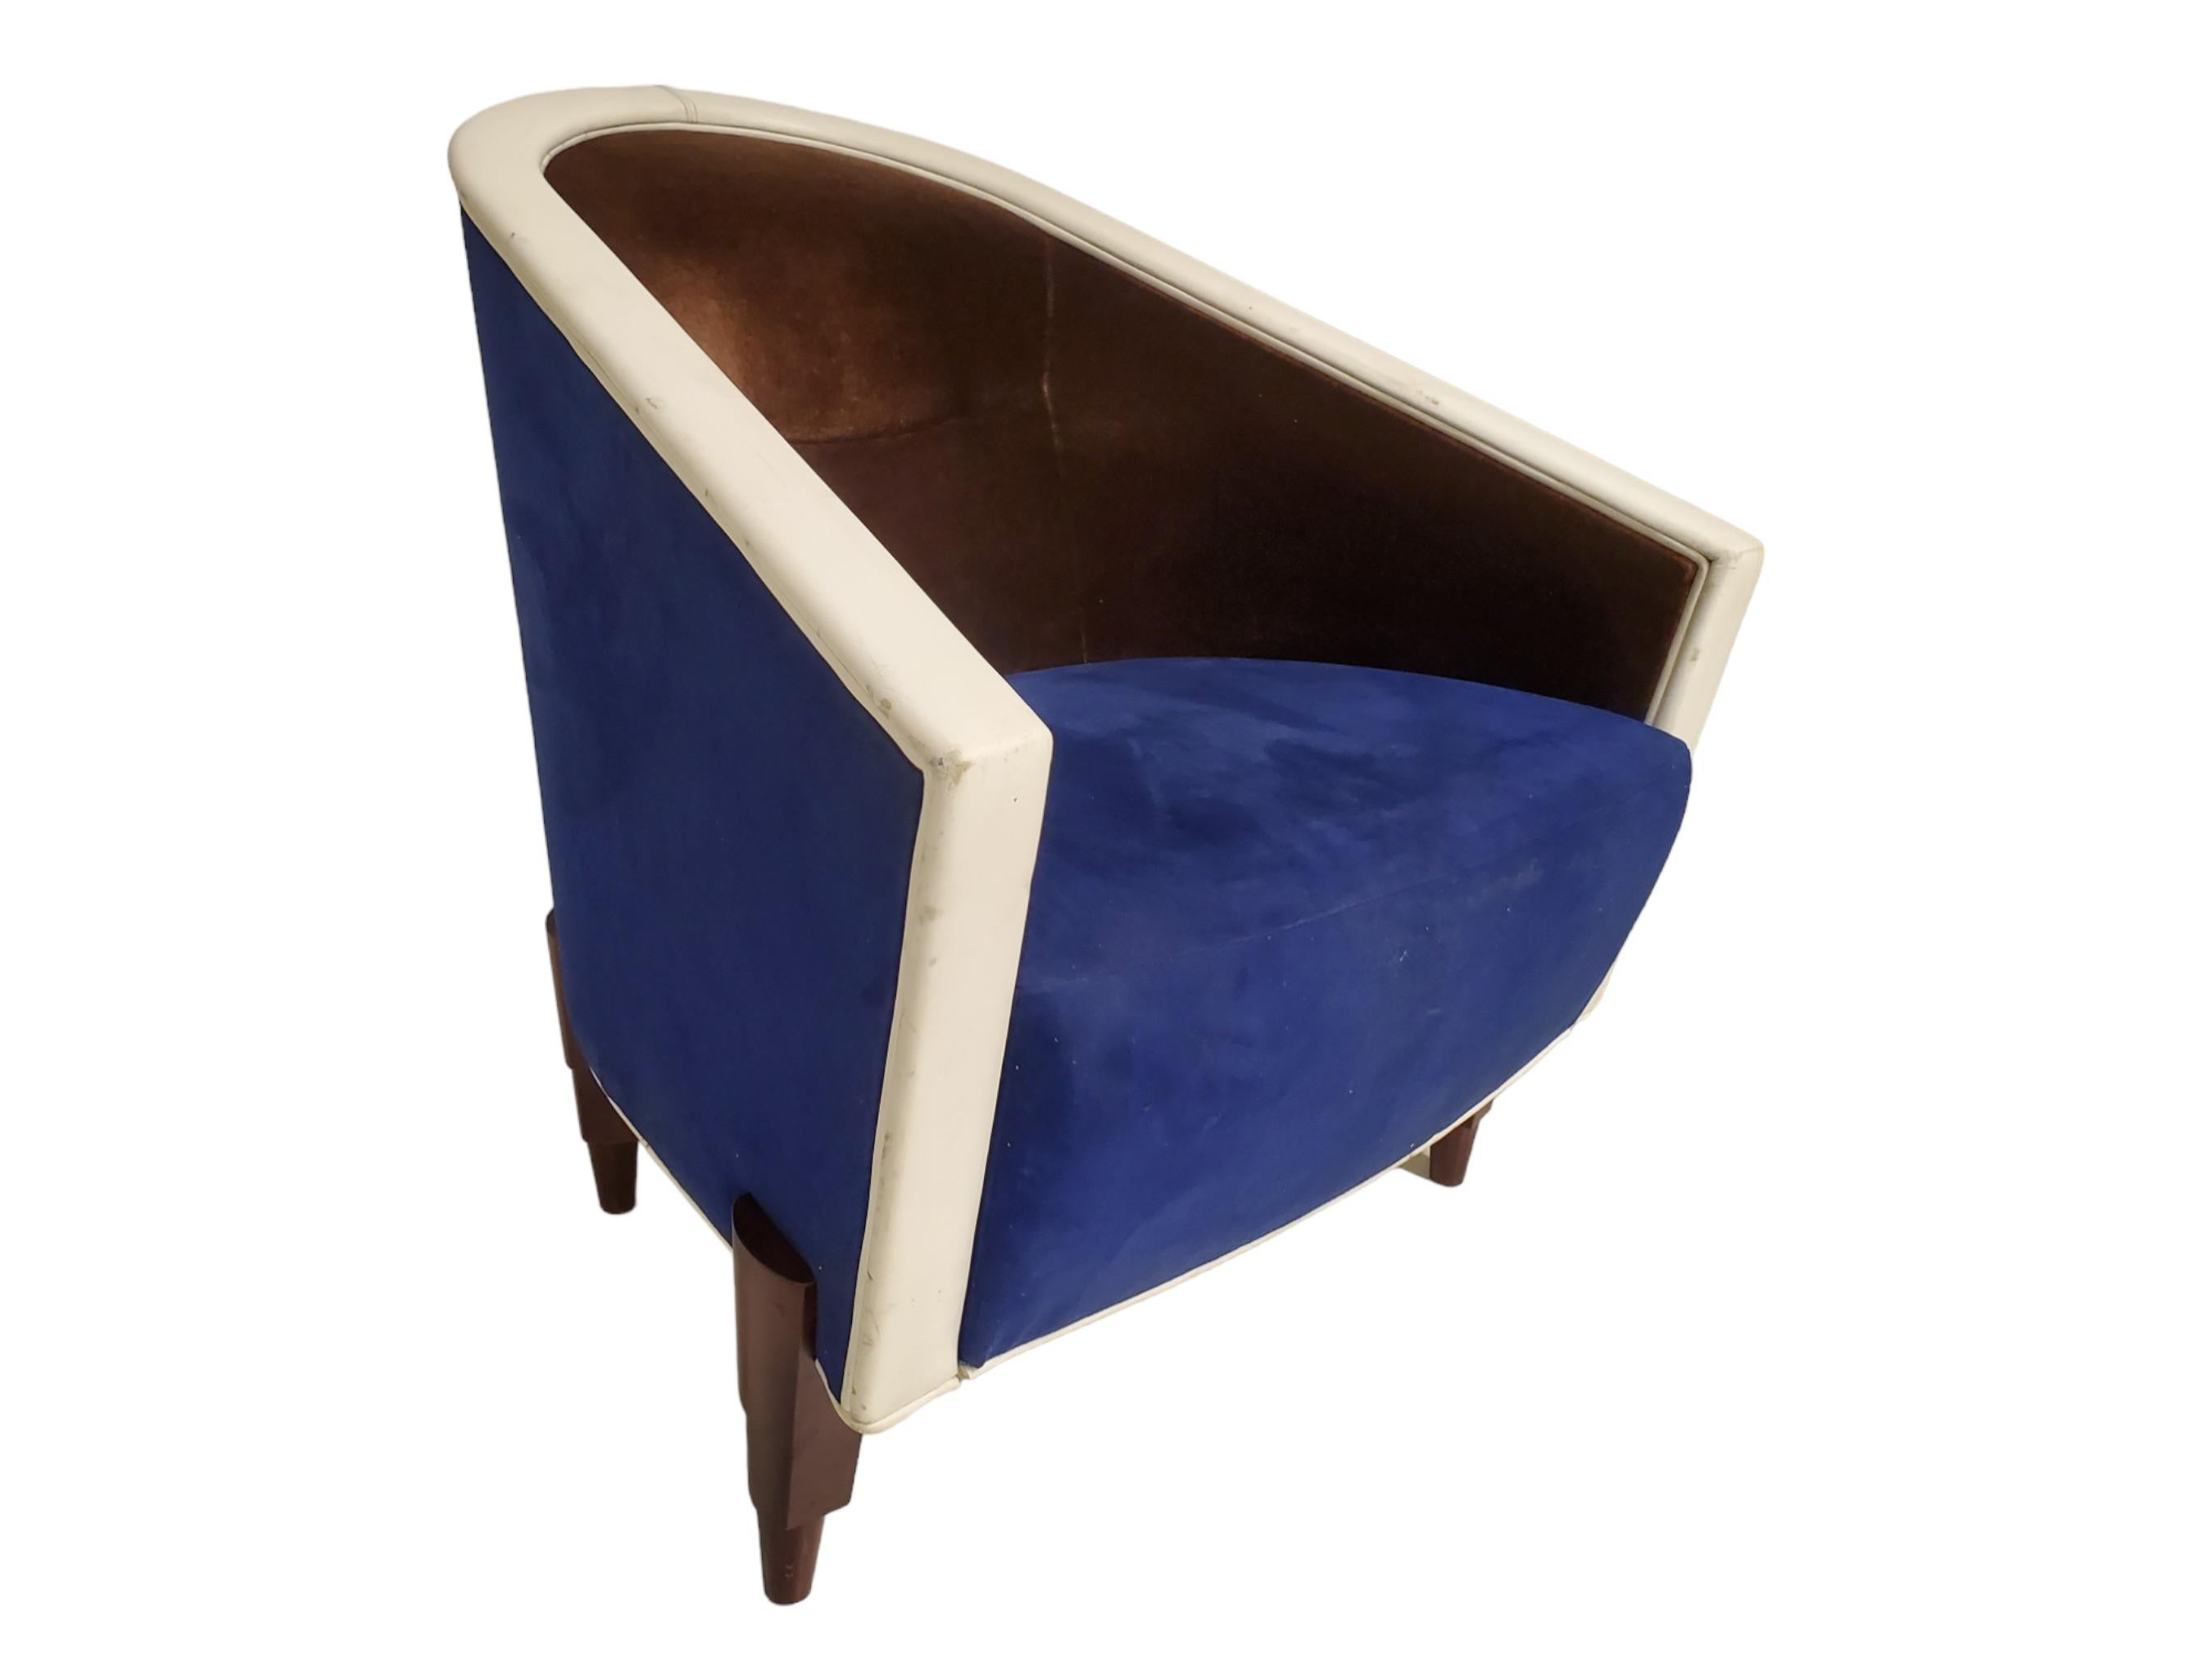  Une chaise d'appoint italienne exquise et confortable de Colber International. 
La chaise provient d'un hôtel français situé près des Champs-Élysées.
 Ce fauteuil club sculptural au design épuré est enveloppé d'un luxueux mélange de daim bleu